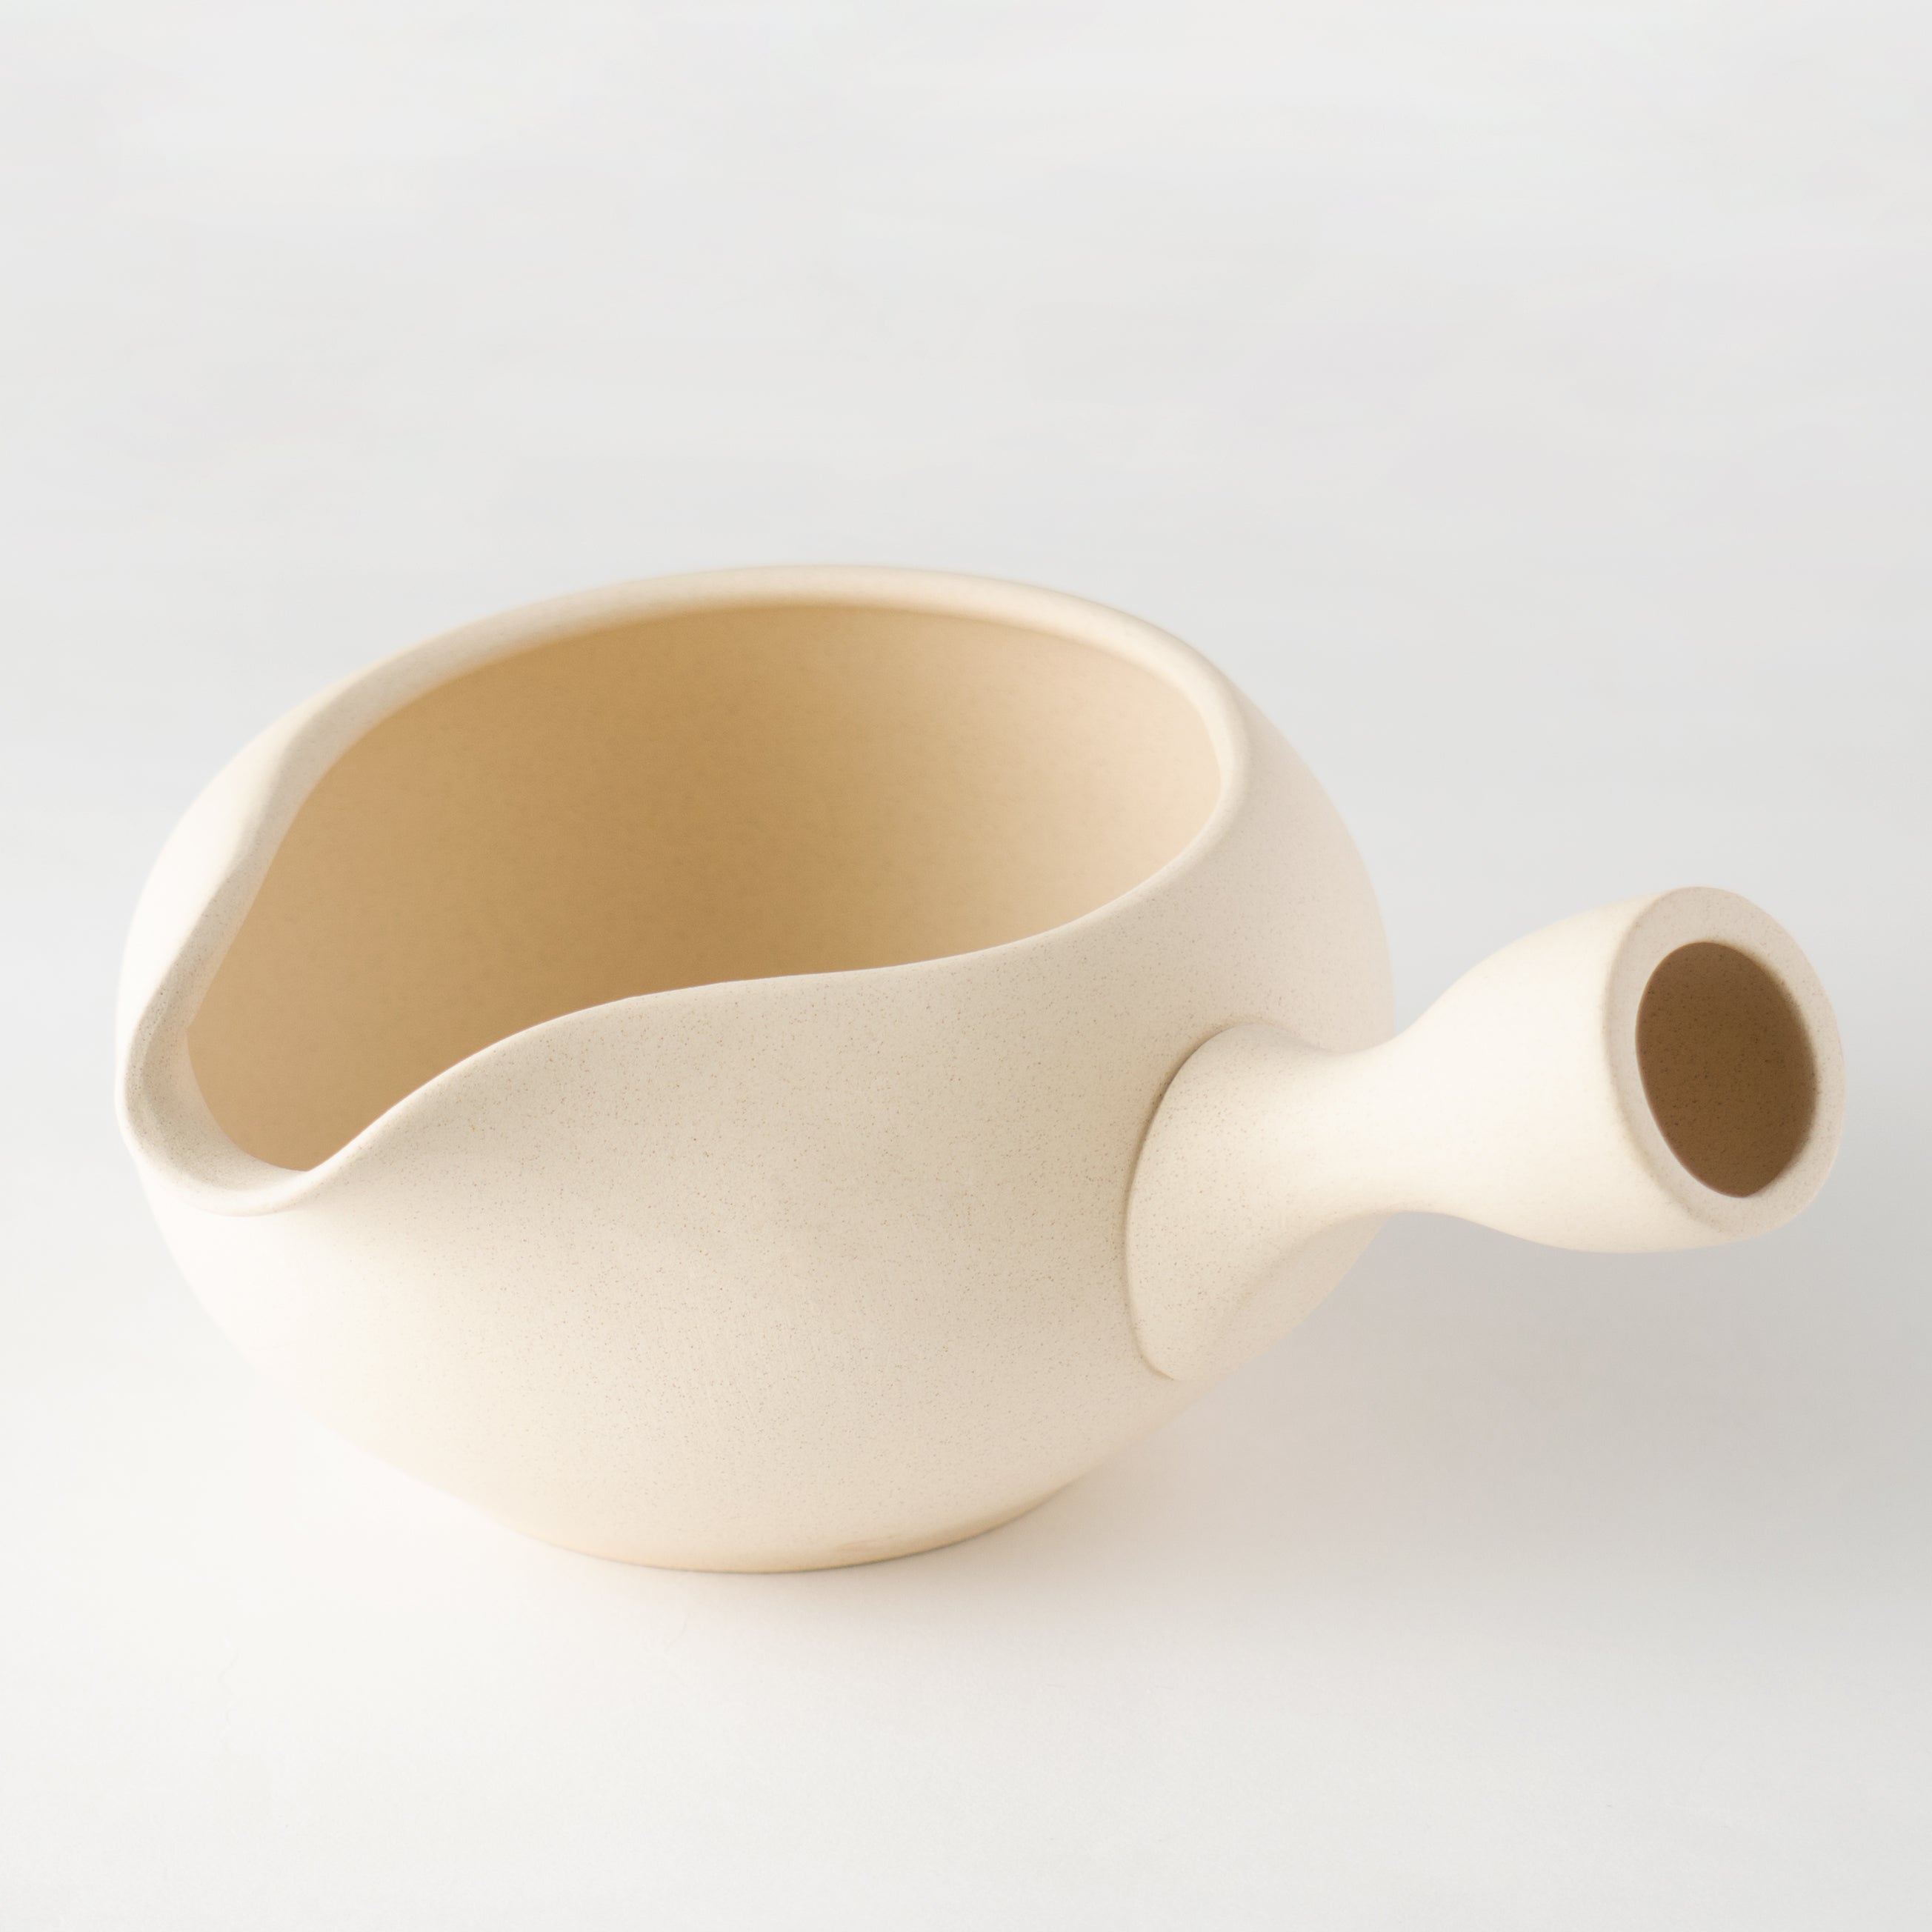 Yuzamashi / Matcha bowl [Ivory-White]